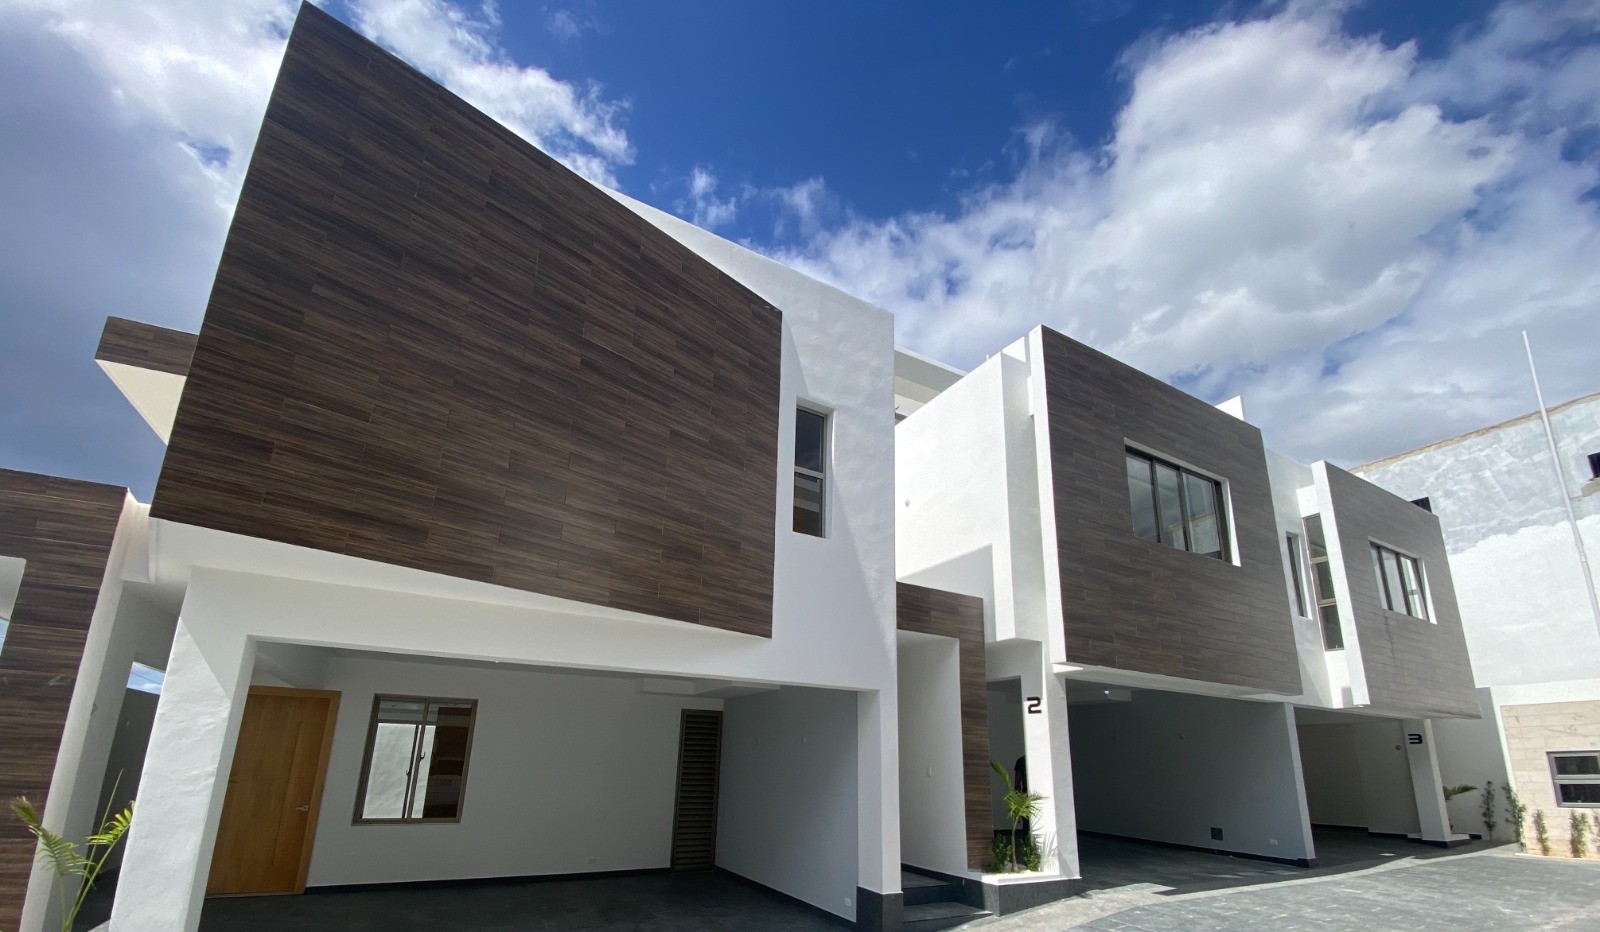 casas - Casas modernas en proyecto cerrado, listas para mudarse, Autopista de San Isidro 2